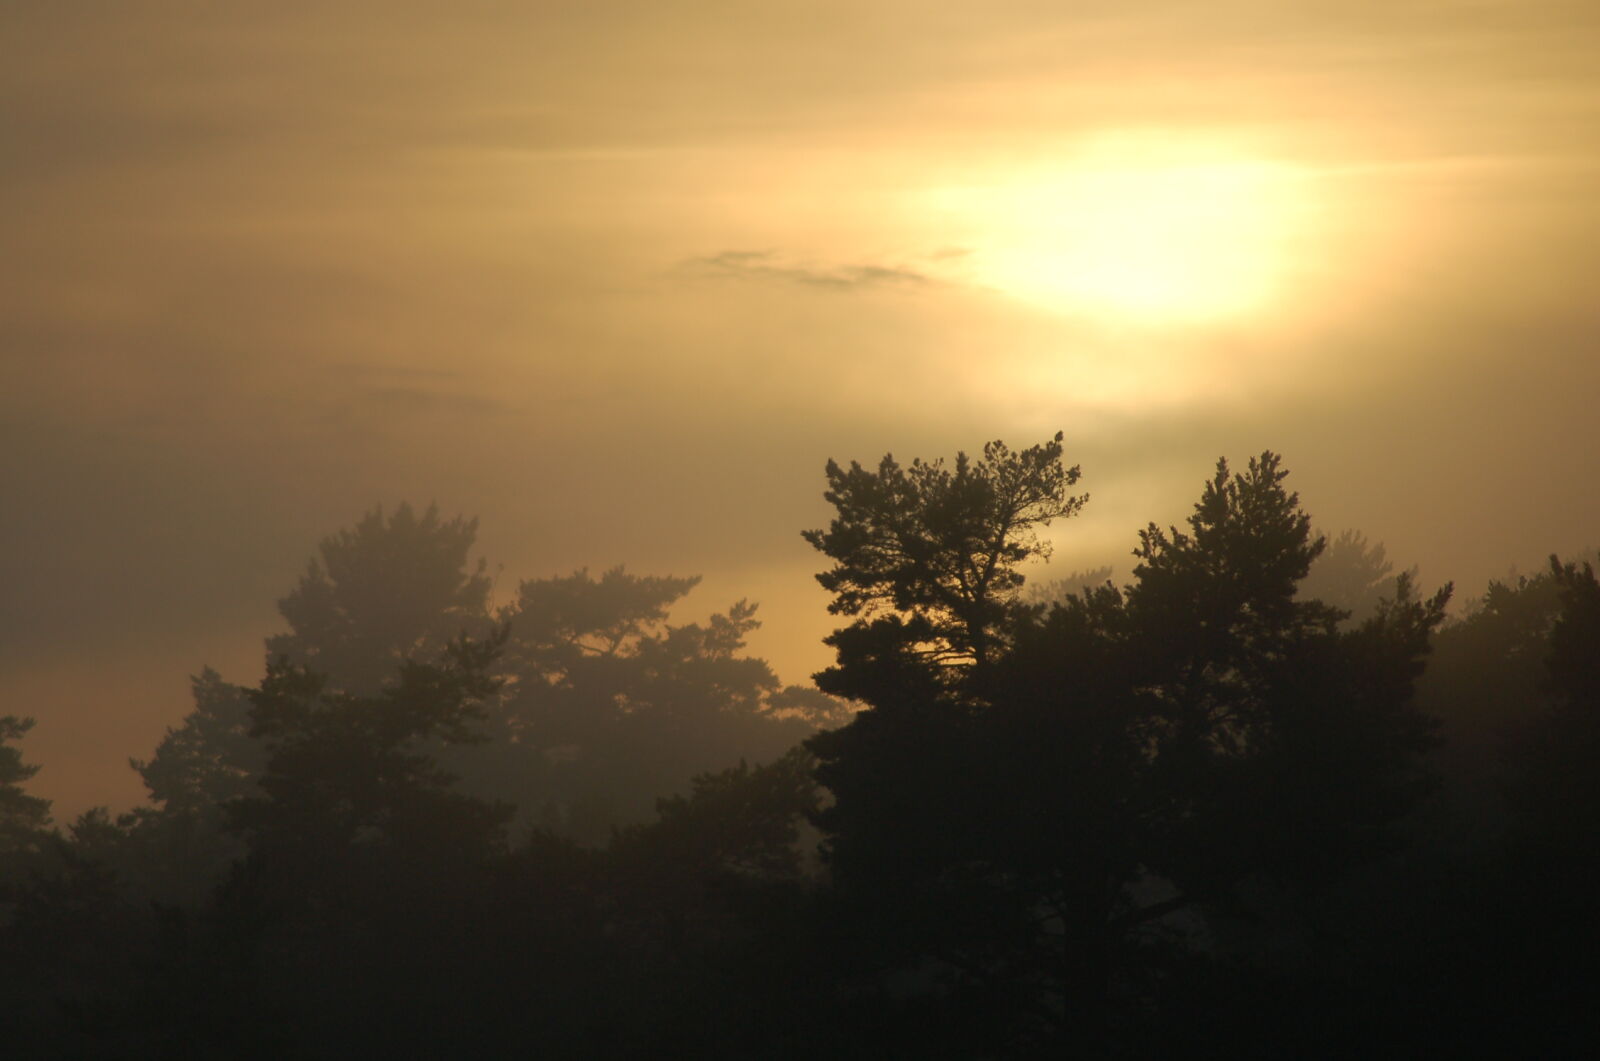 Nikon AF Nikkor 70-300mm F4-5.6G sample photo. Clouds, fog, mist, sunset photography